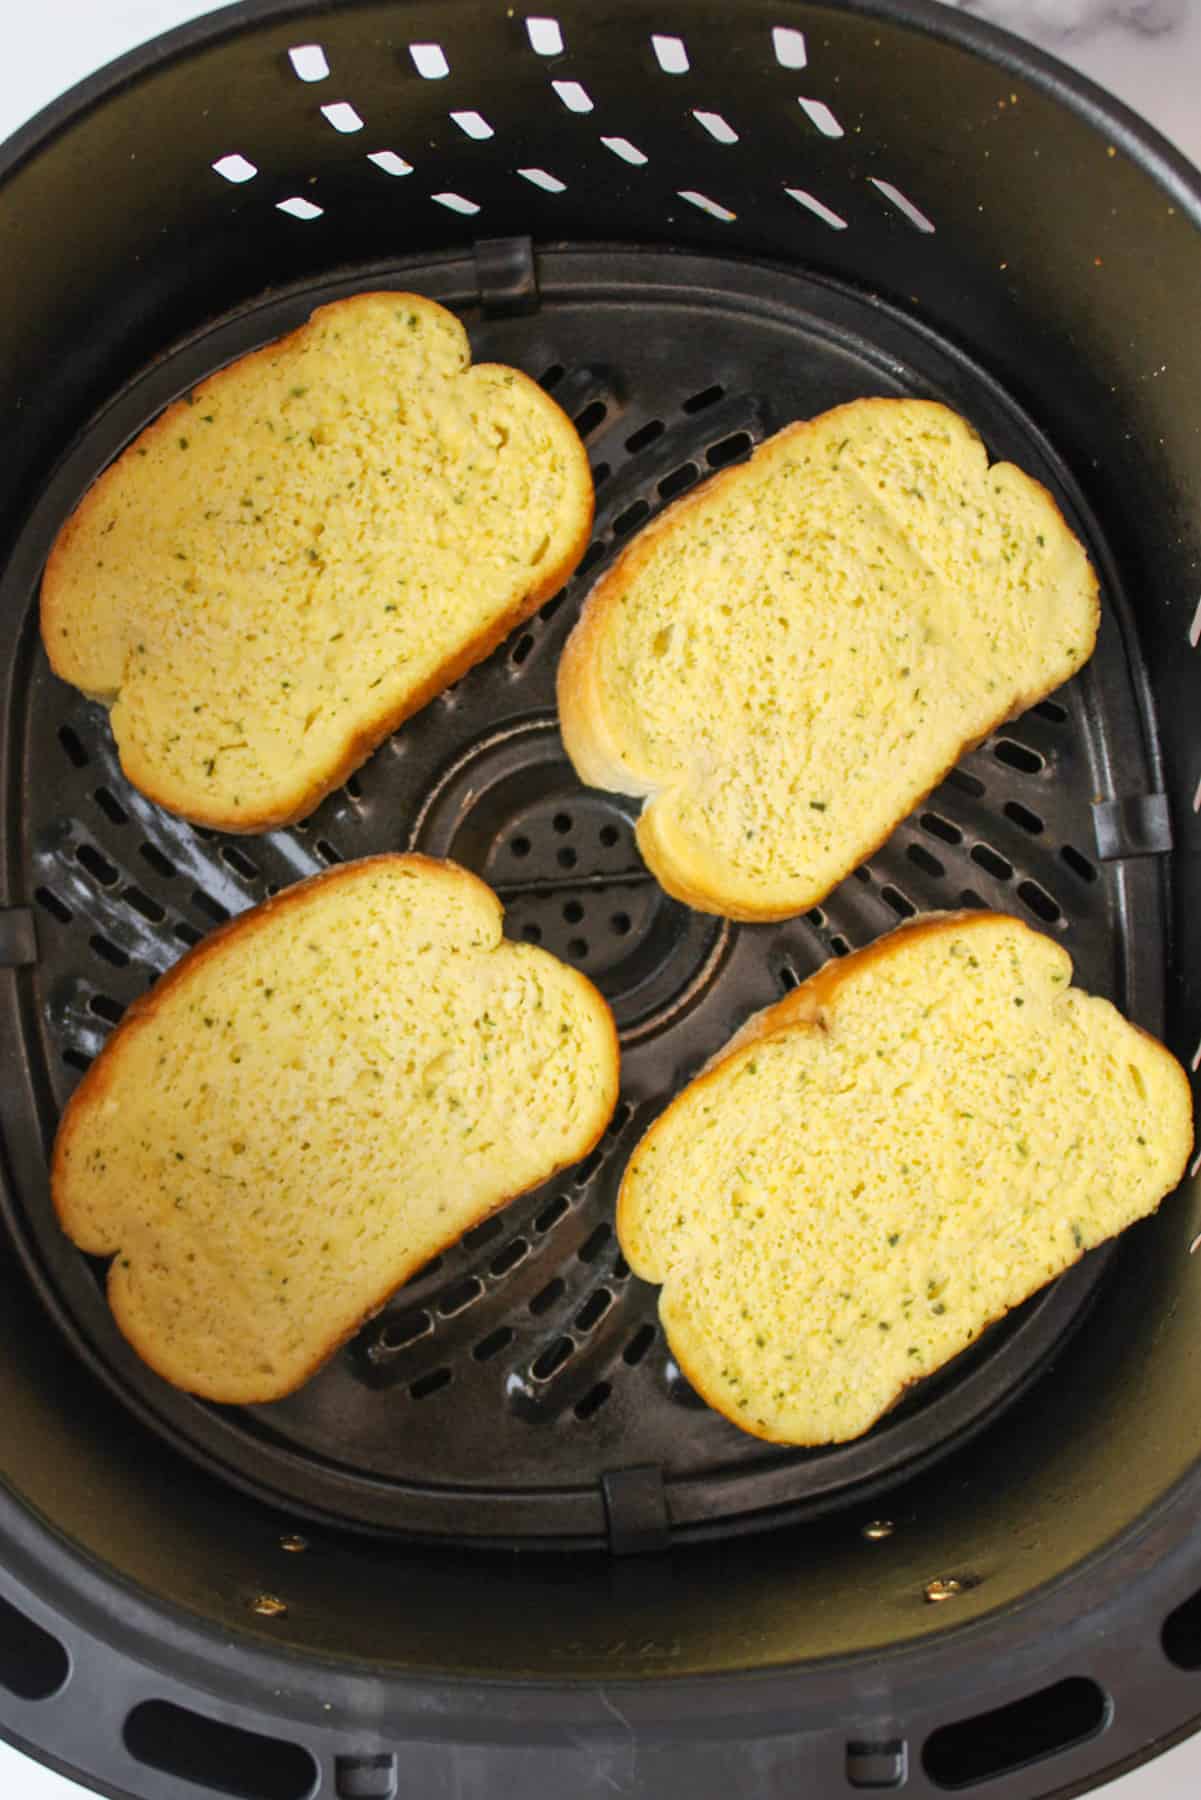 frozen garlic toast in an air fryer basket